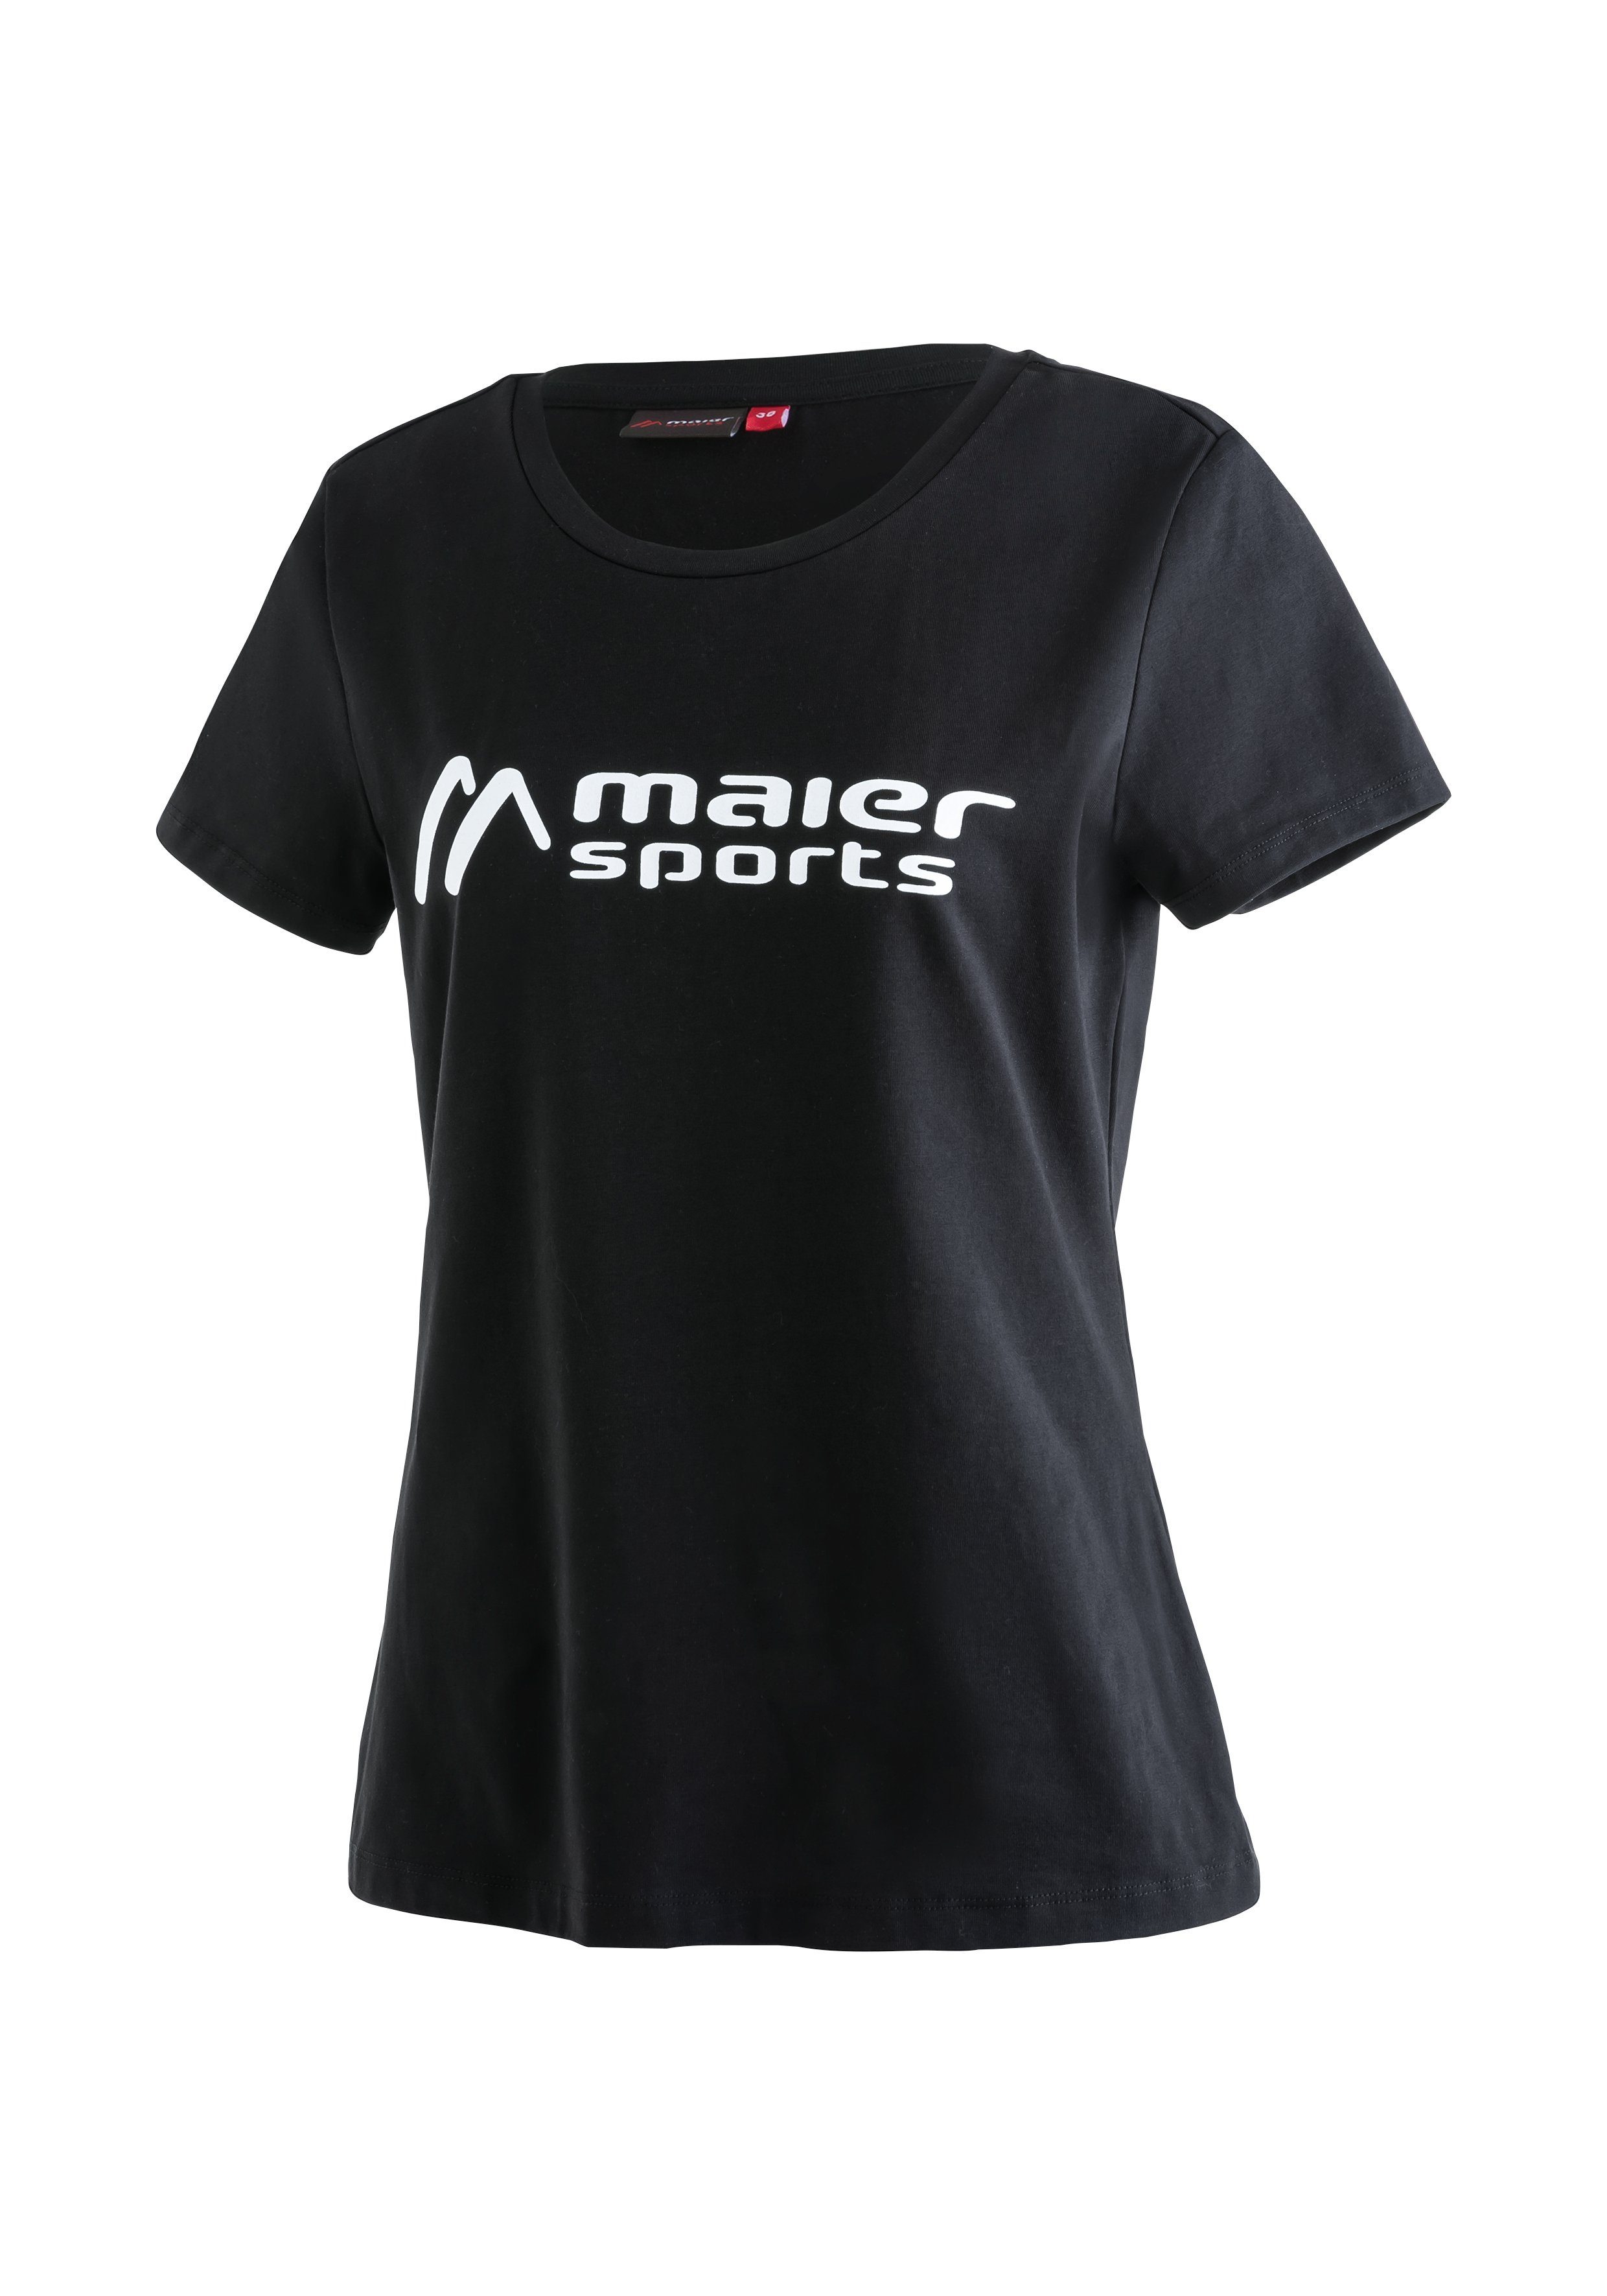 Maier Sports Funktionsshirt MS Tee aus Material schwarz elastischem W Vielseitiges Rundhalsshirt